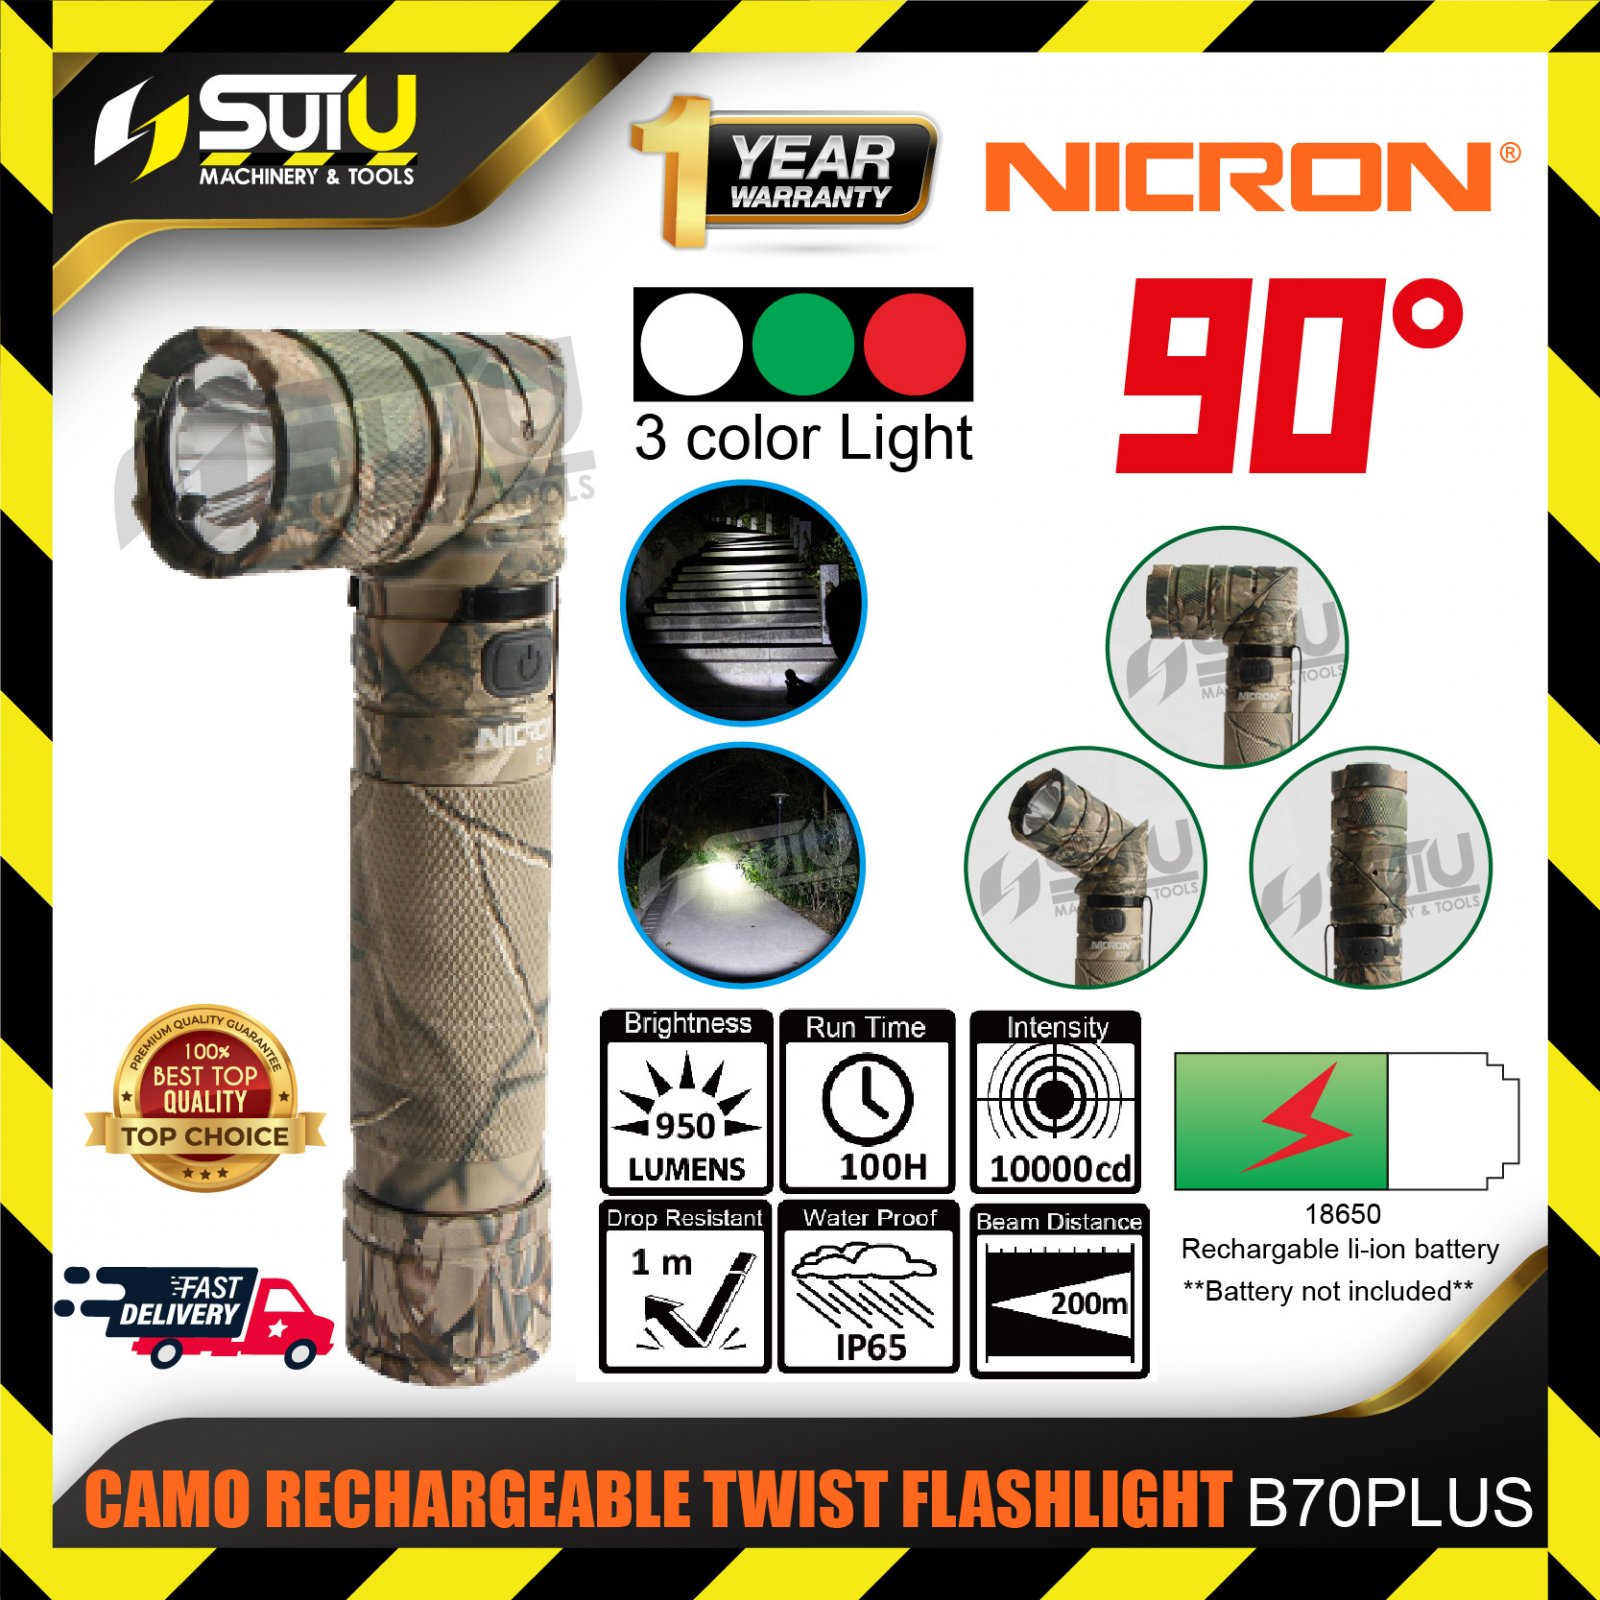 NICRON B70 Plus Camo Rechargeable Twist Flashlight 950LM w/ 3